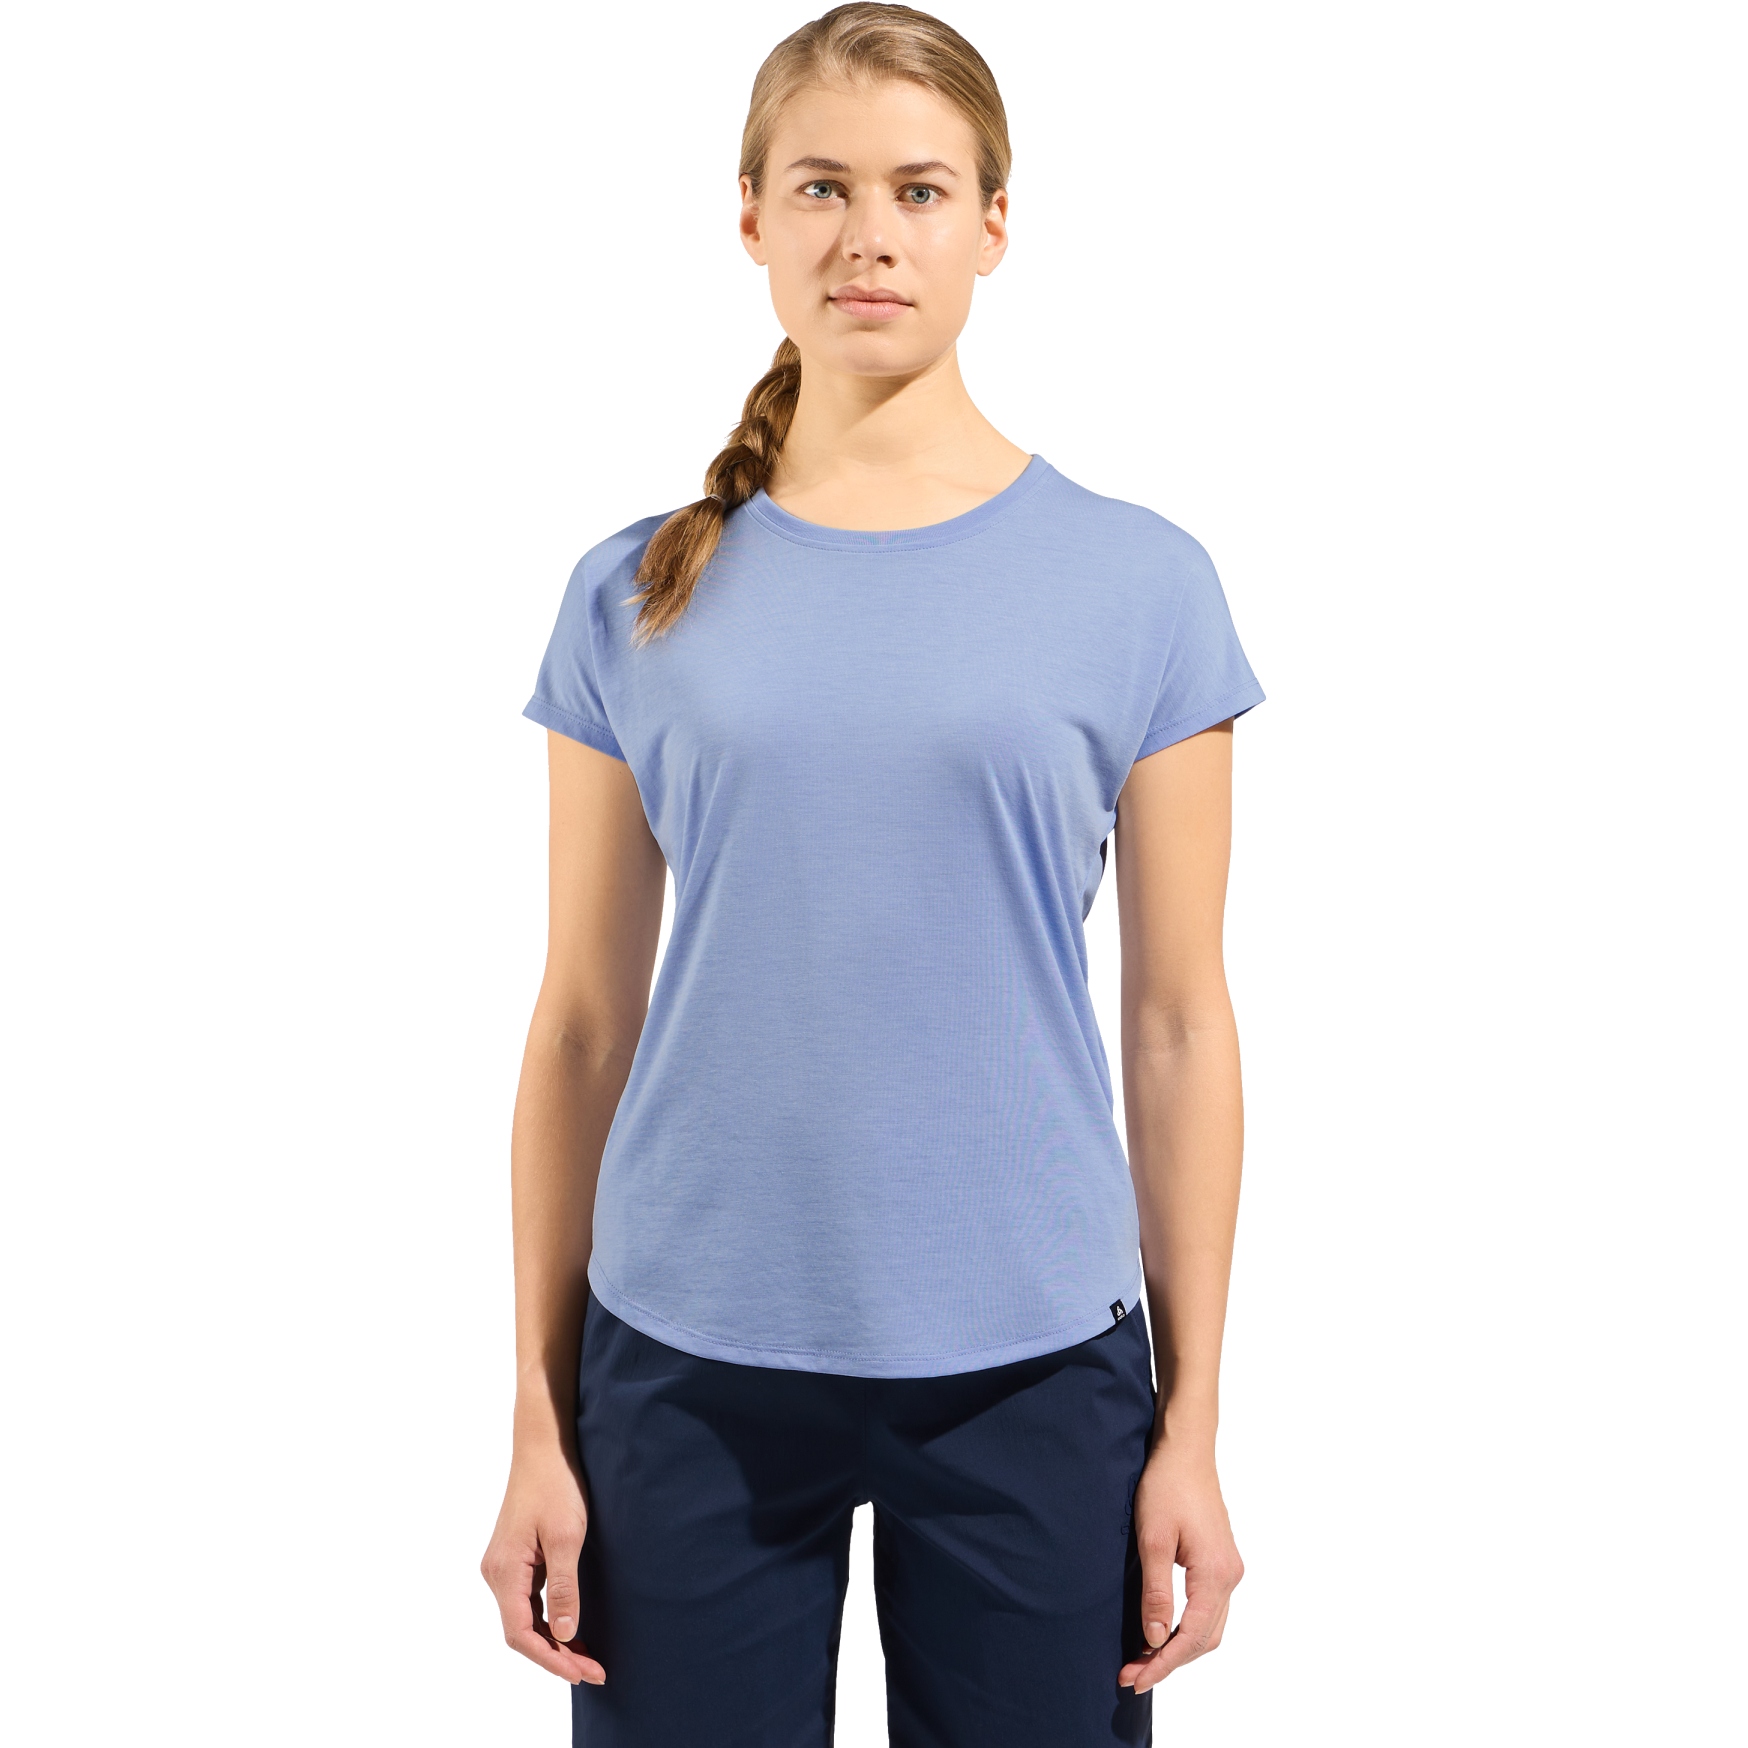 Produktbild von Odlo Essentials T-Shirt mit Naturfasern Damen - blue heron melange